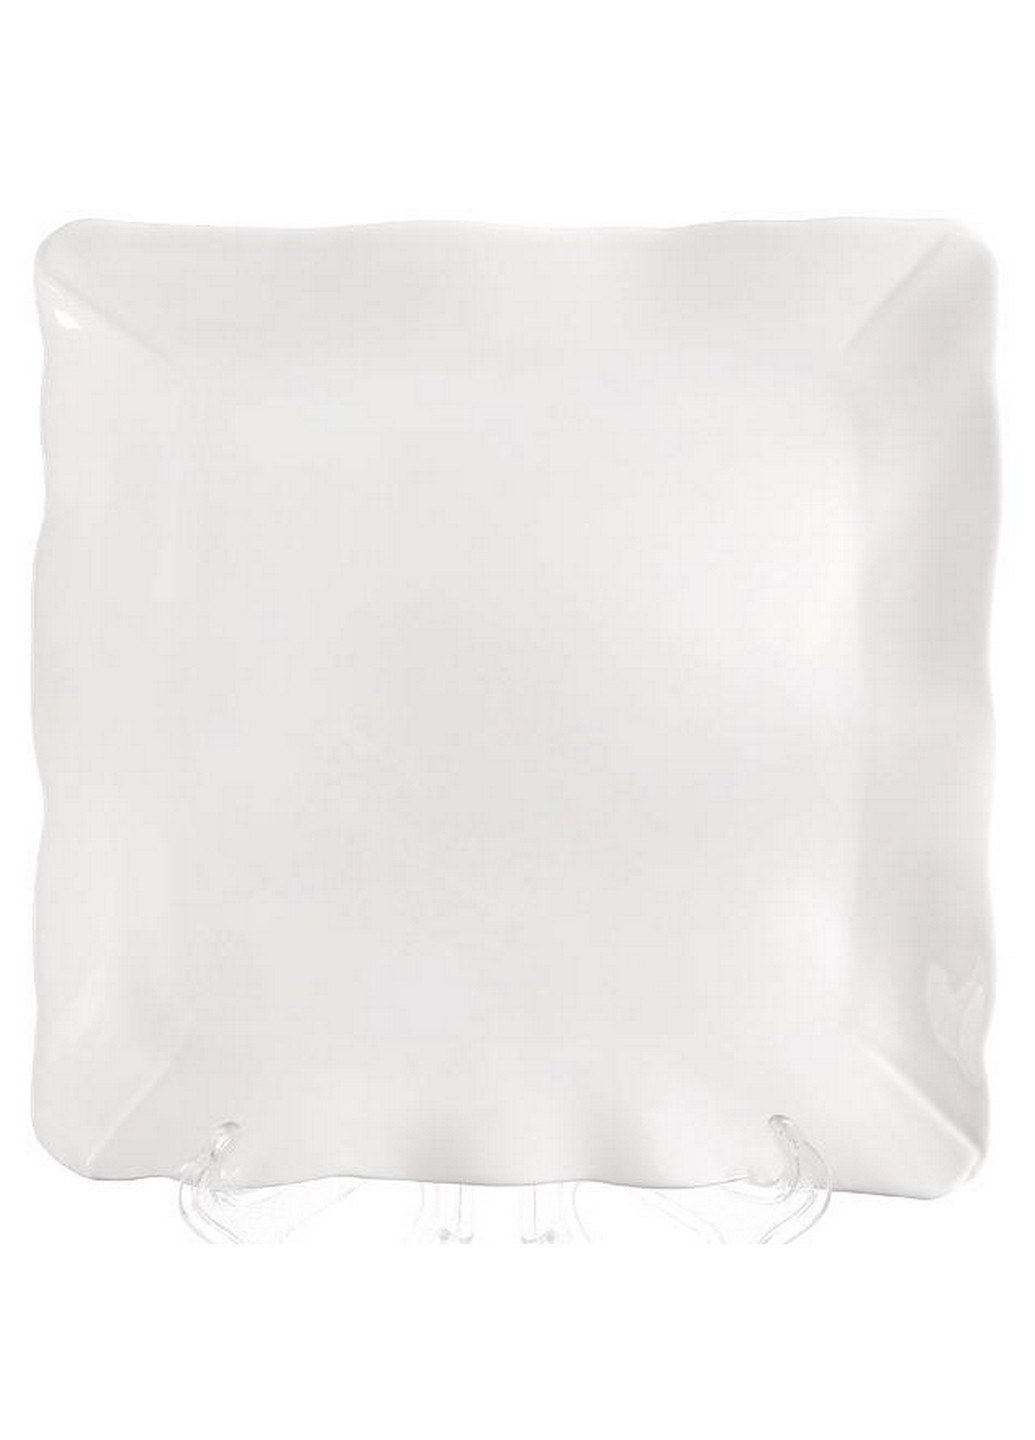 Тарелки квадратные White City Волна, набор 2 фарфоровые тарелки Bona (268457962)